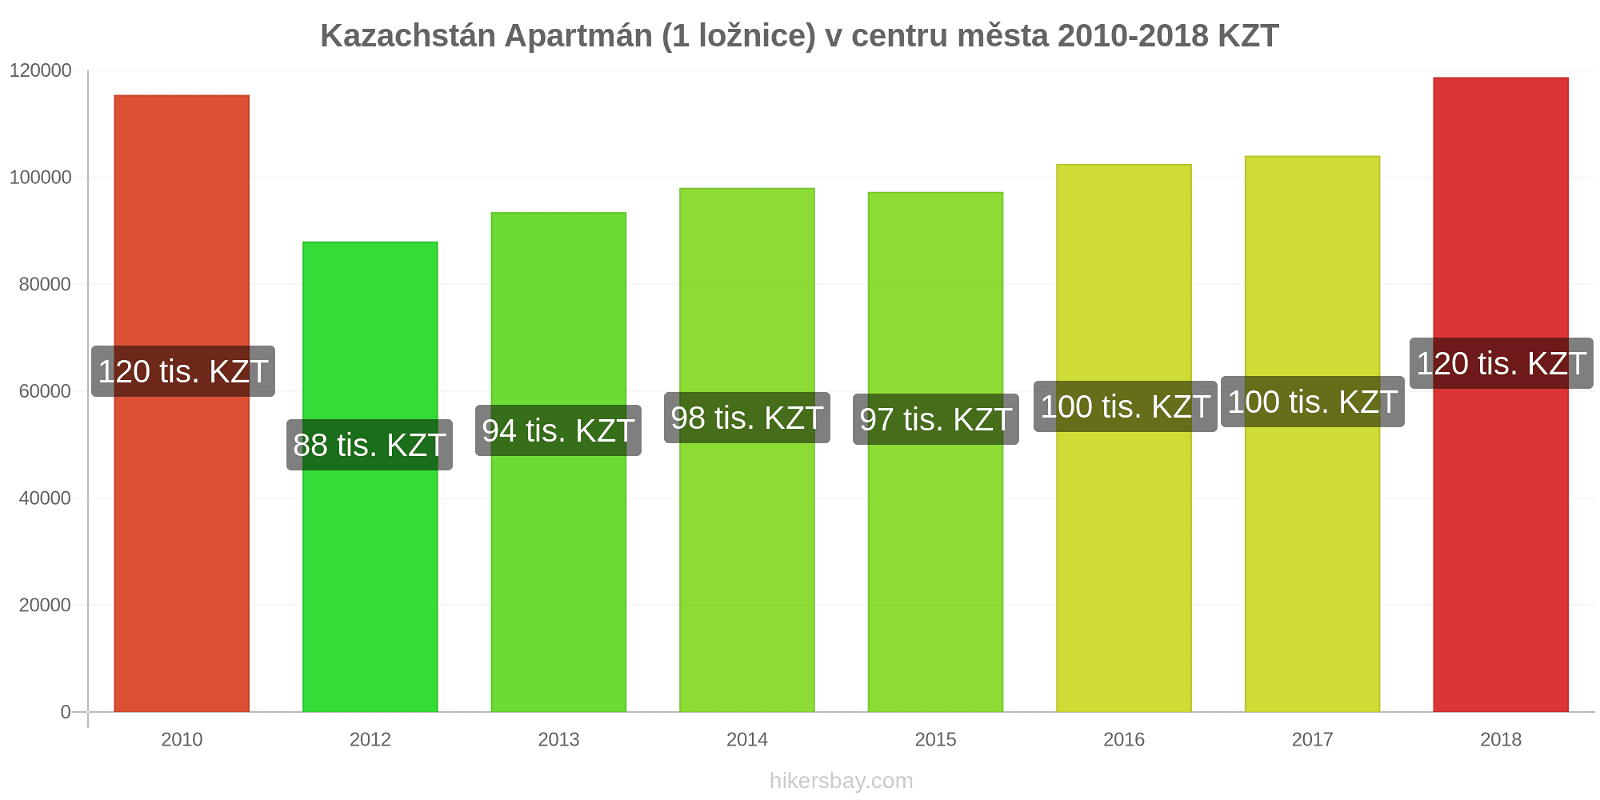 Kazachstán změny cen Apartmán (1 ložnice) v centru města hikersbay.com